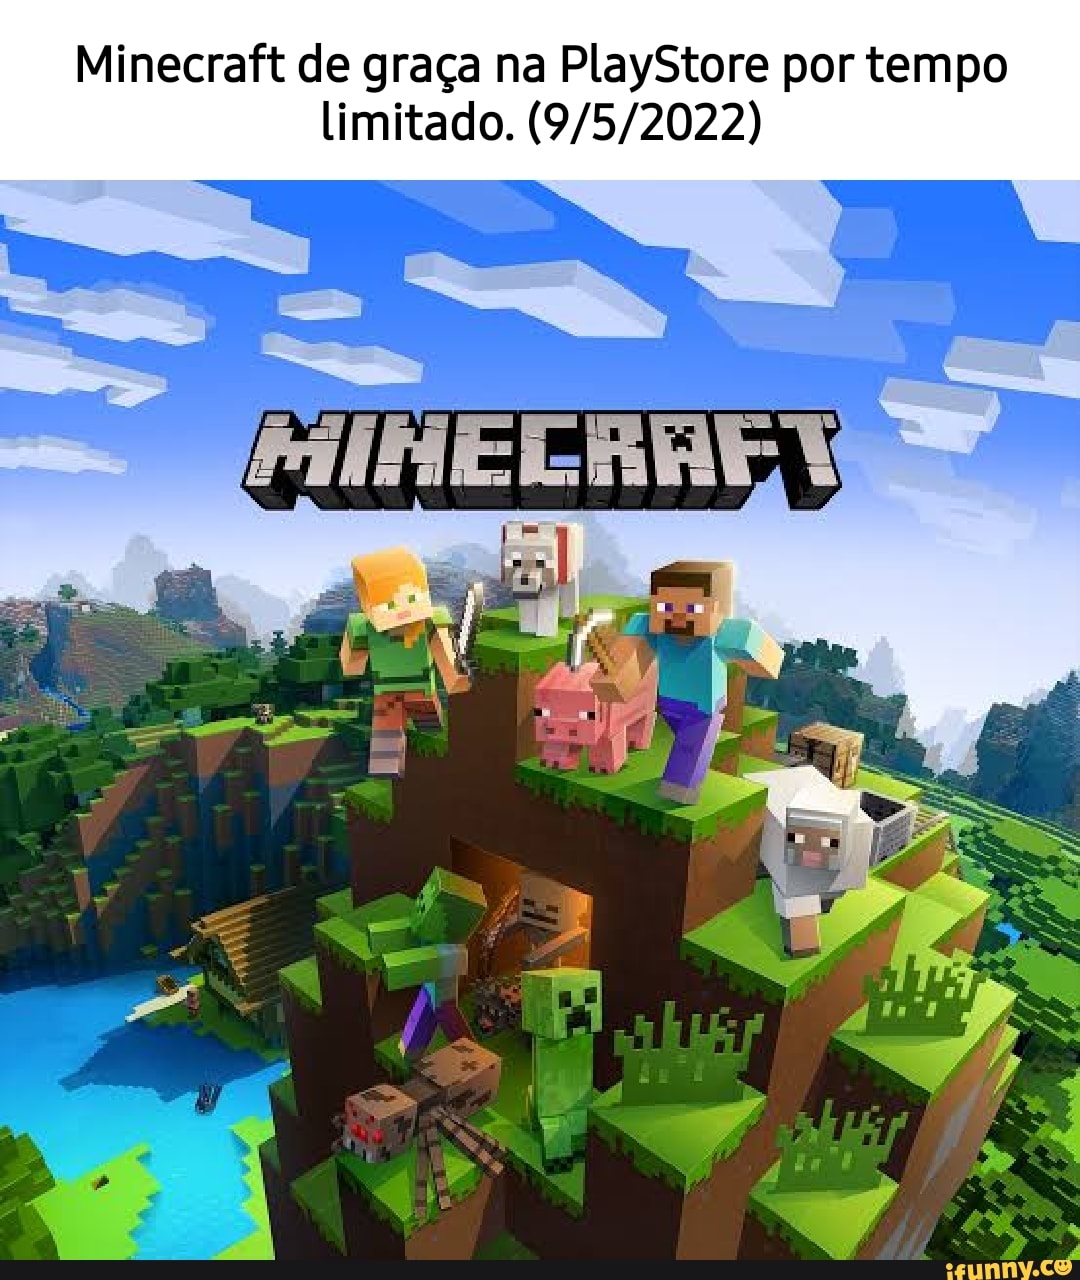 Comentários do Minecraft no Google Play : r/brasil